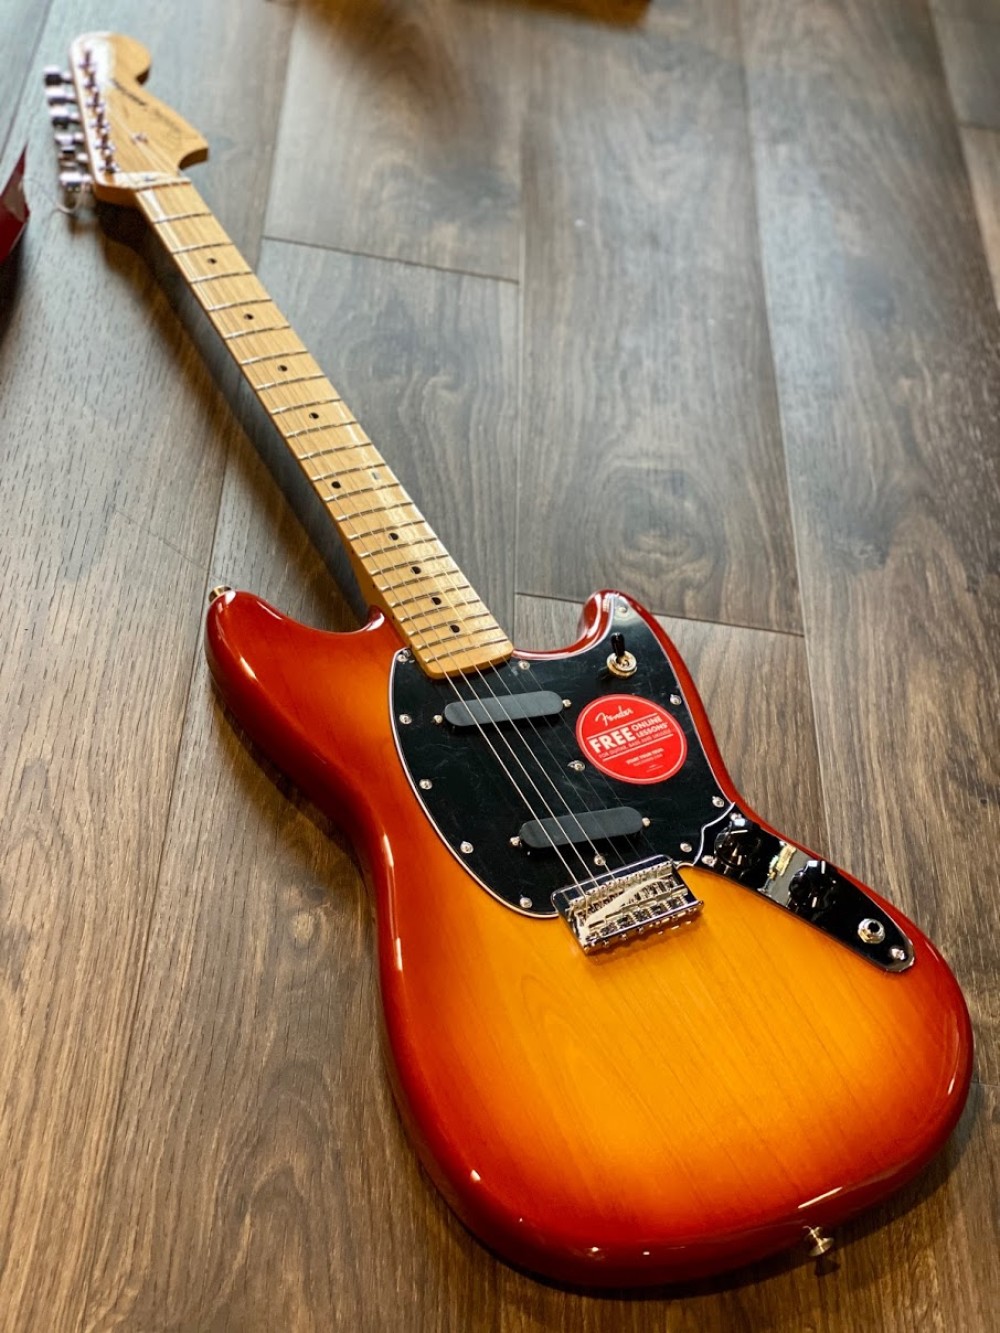 超美品 Fender / Player Mustang Maple サンバースト エレキギター - cosmos.ualr.edu